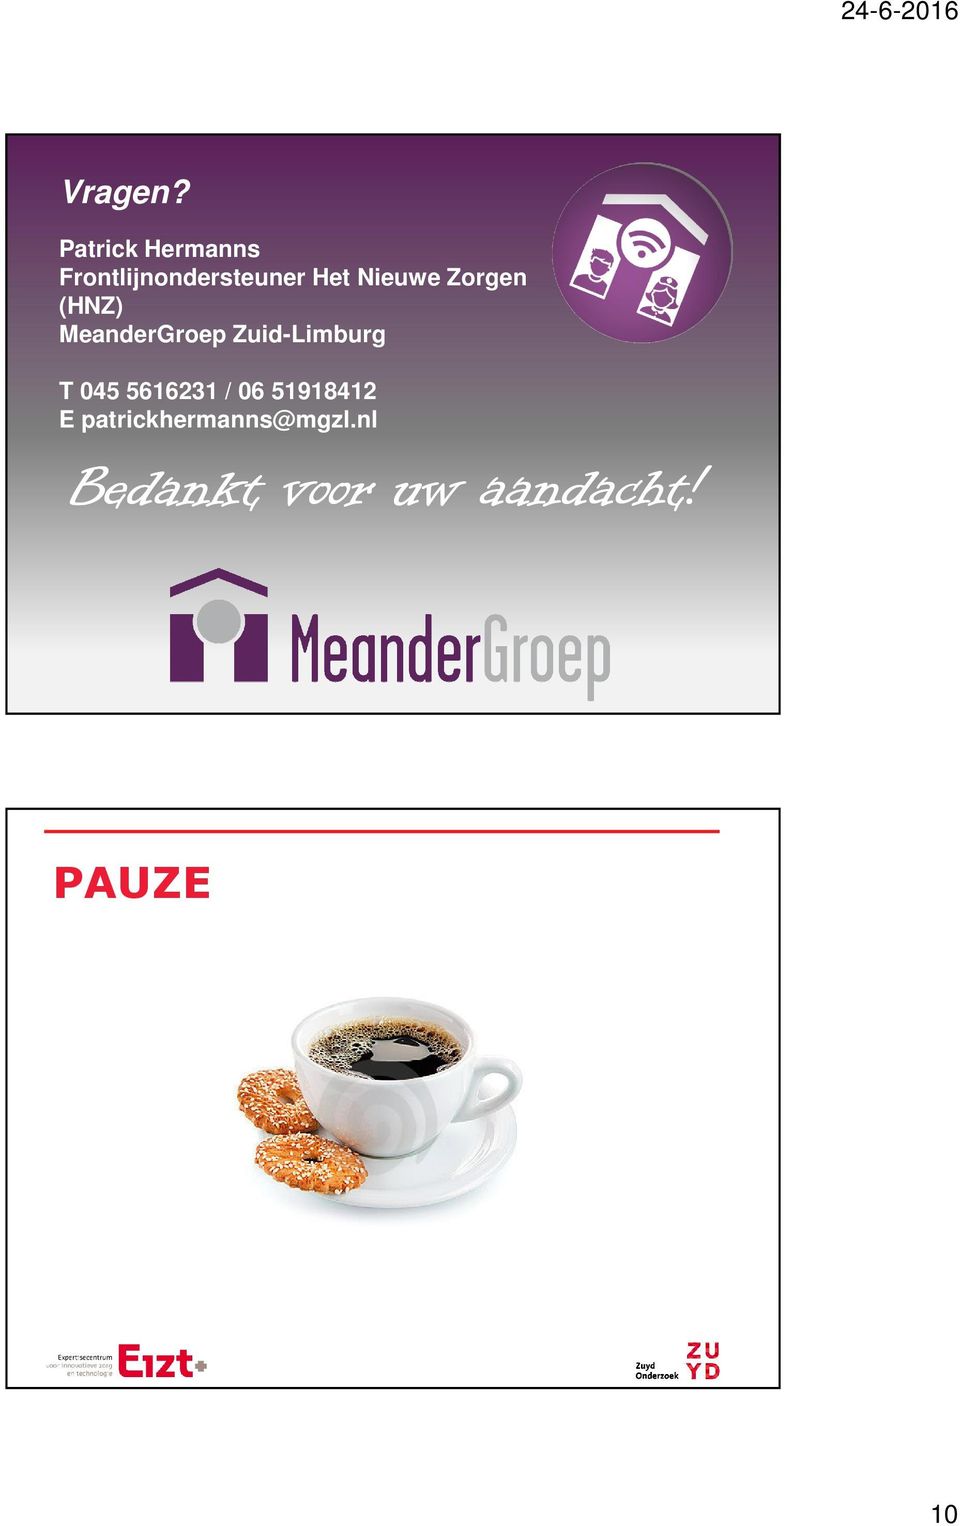 Nieuwe Zorgen (HNZ) MeanderGroep Zuid-Limburg